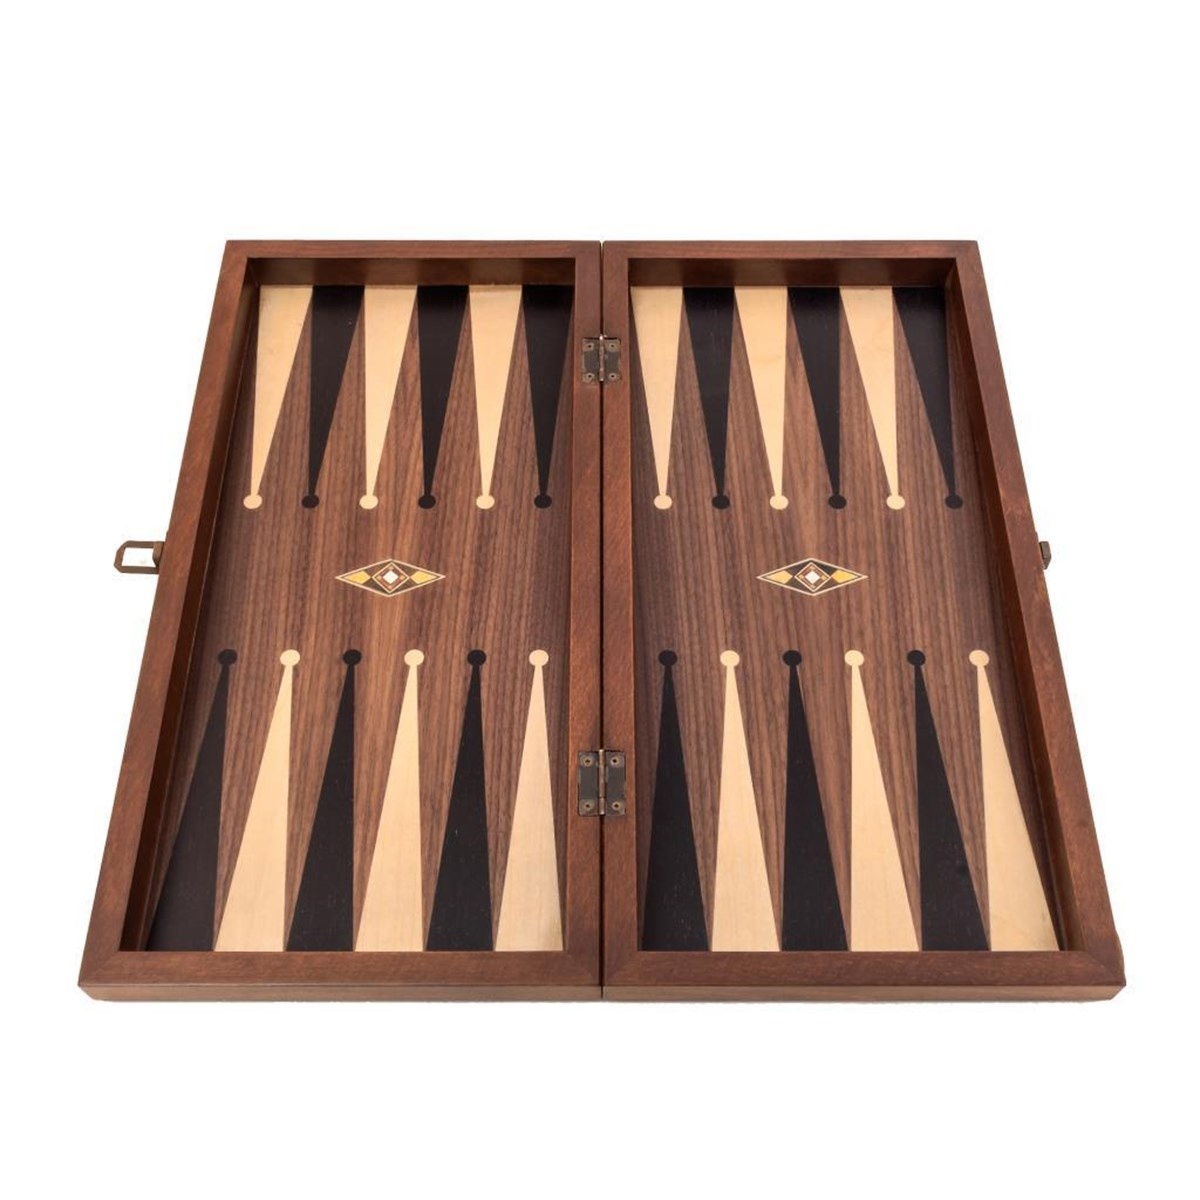 Helena Wood Art Handgemaakte Houten Backgammon Speelset van Hoge Kwaliteit - Tavla - 100% Hout - Luxe uitgave - TricTrac - 49 x 25 cm